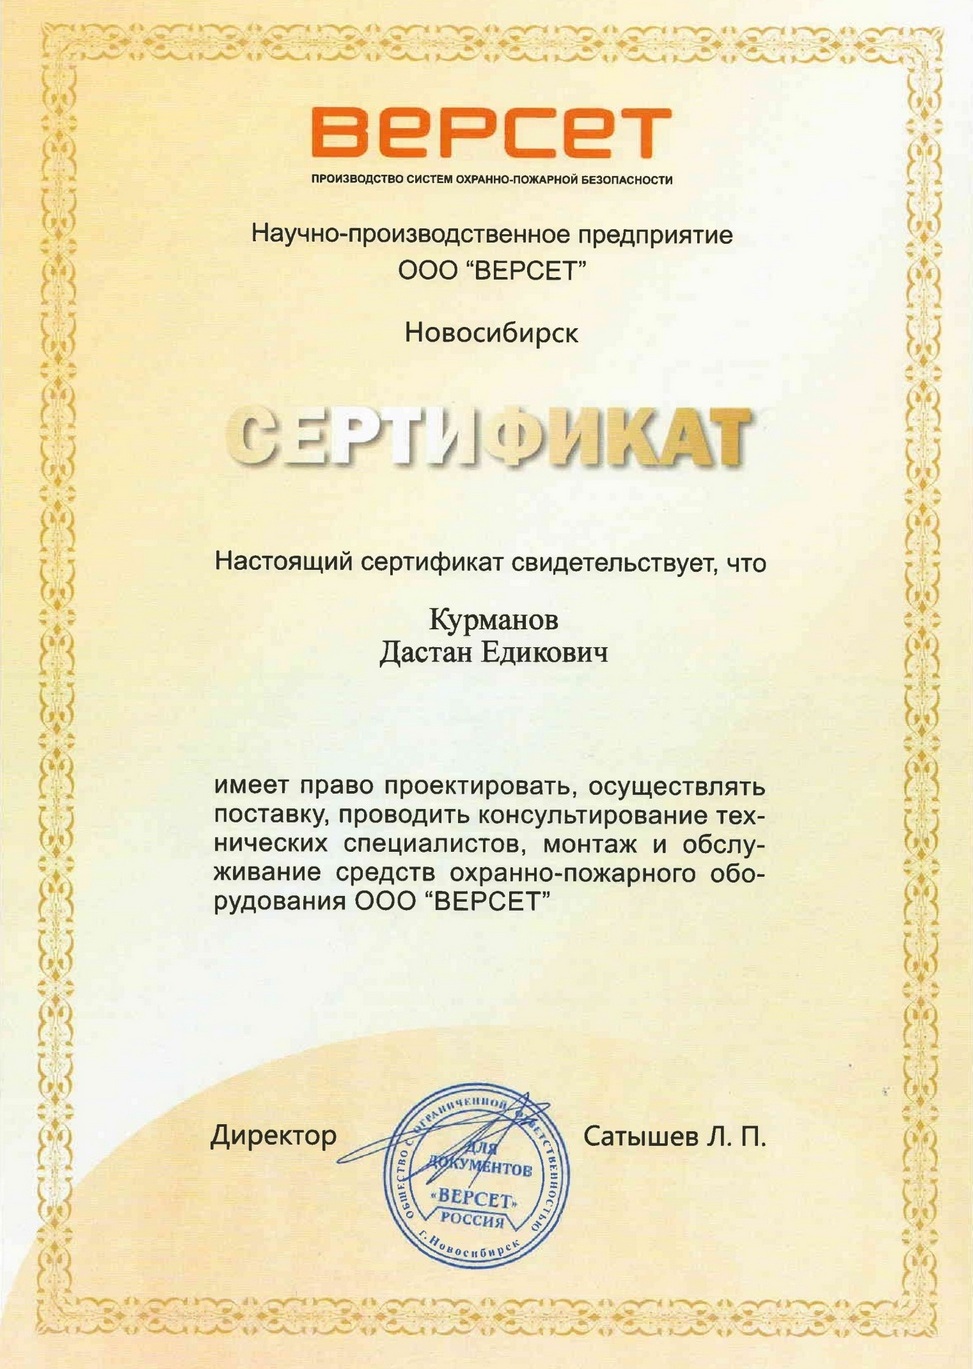 Сертификат компании Версет